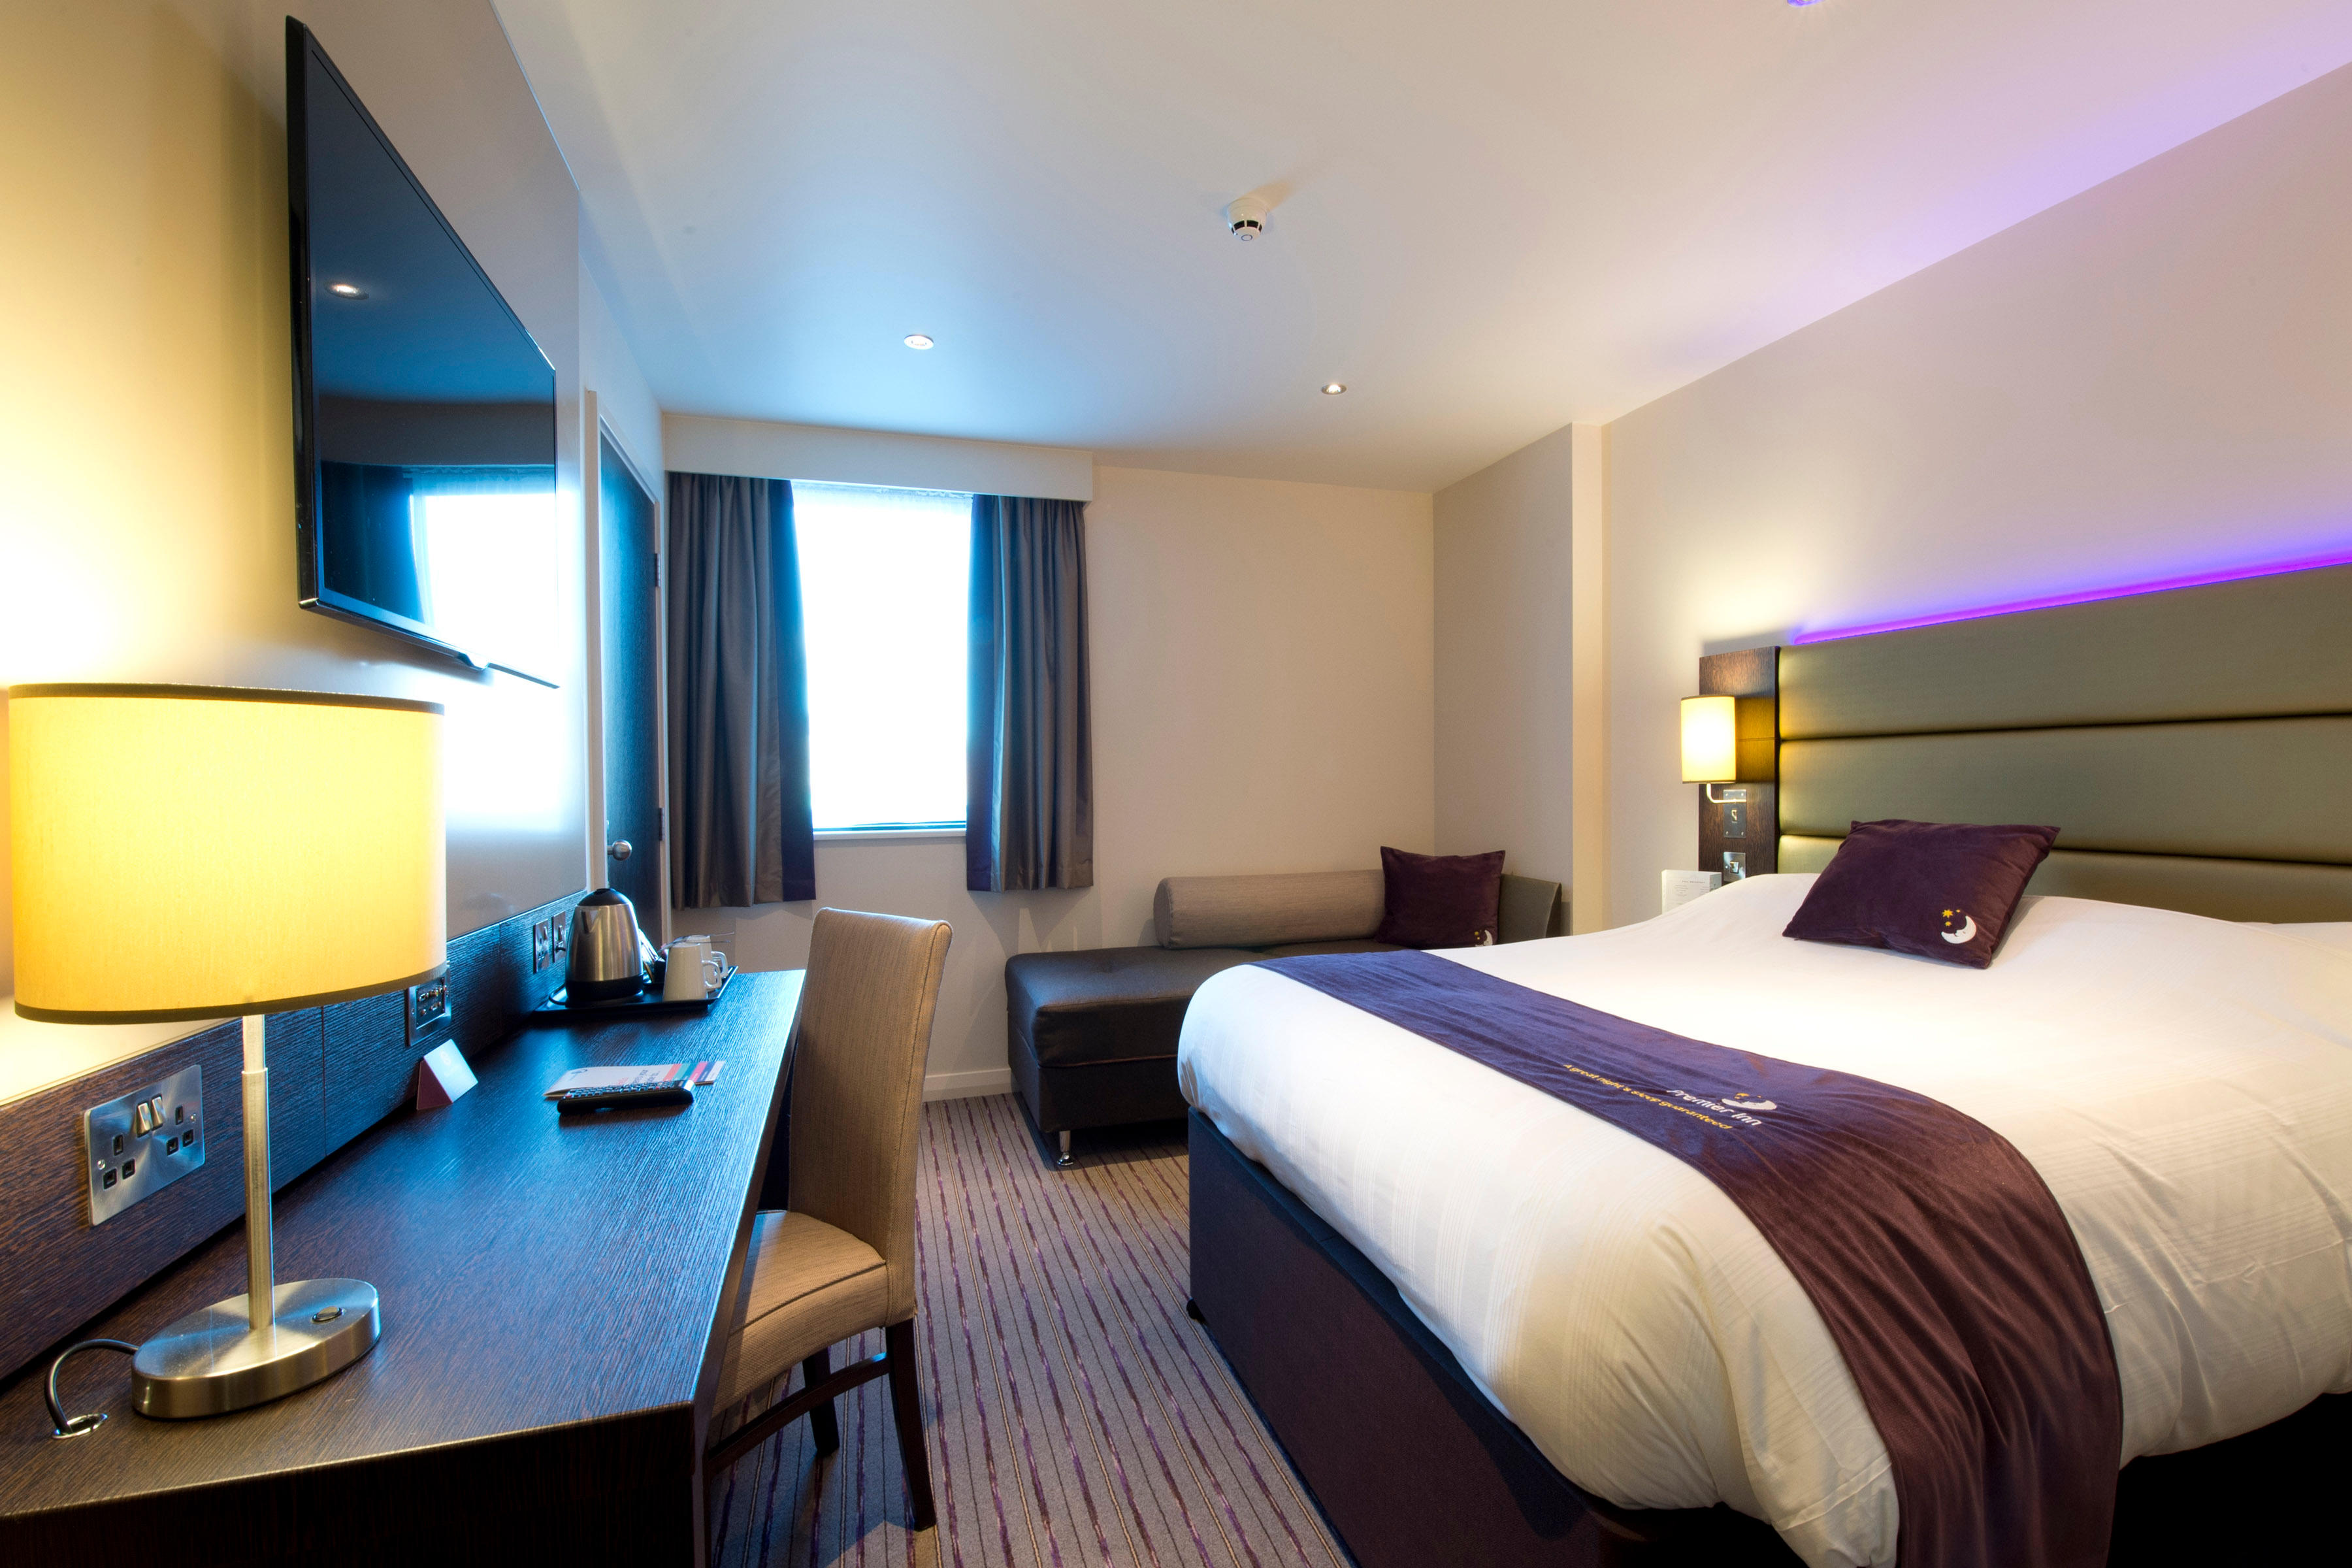 Premier Inn bedroom Premier Inn Blackburn Town Centre hotel Blackburn 03333 213081